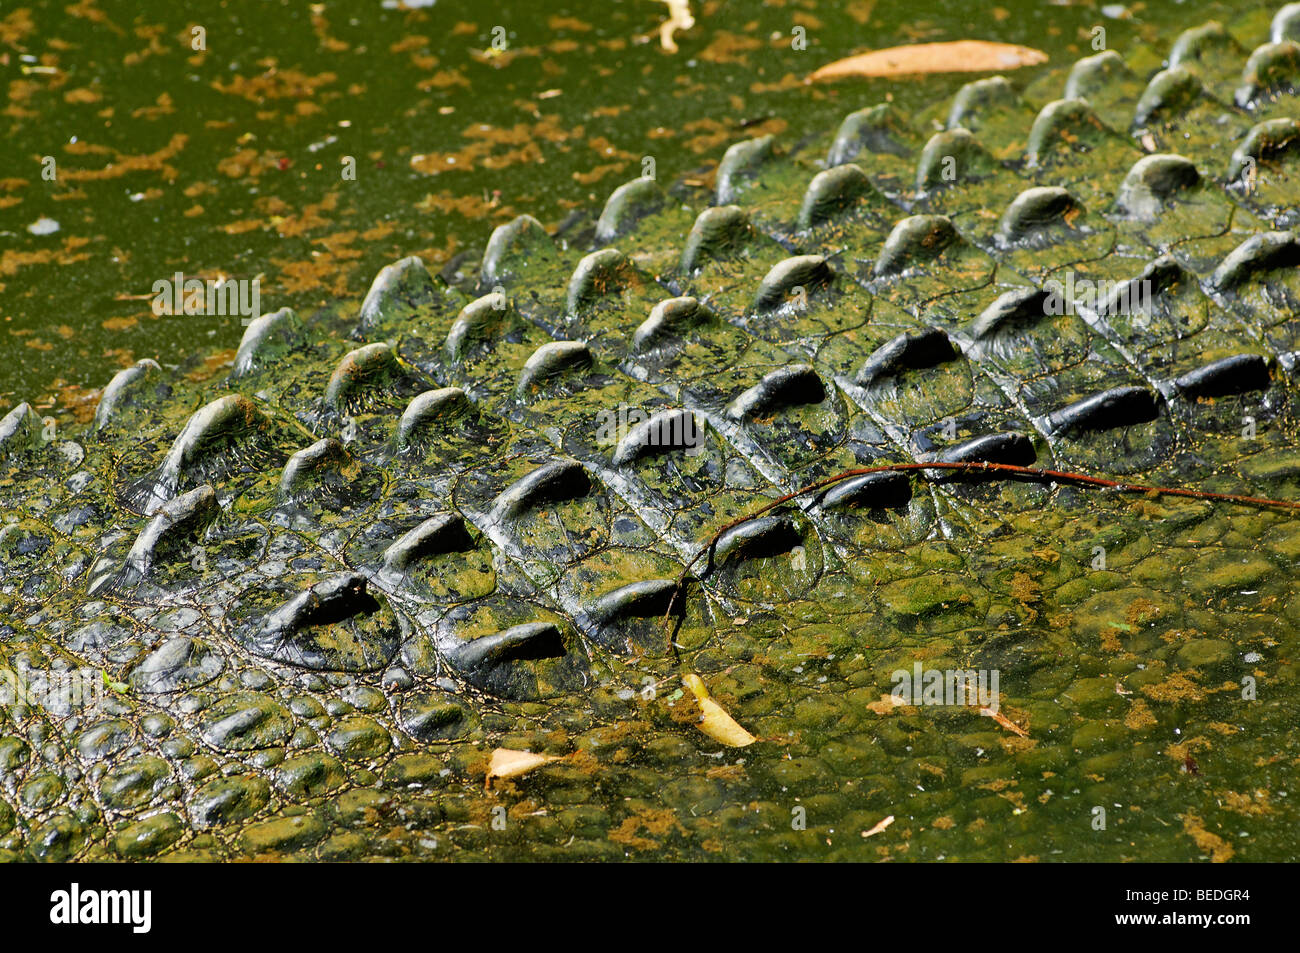 Las escalas de un cocodrilo de agua salada (Crocodylus porosus), Queensland, Australia Foto de stock